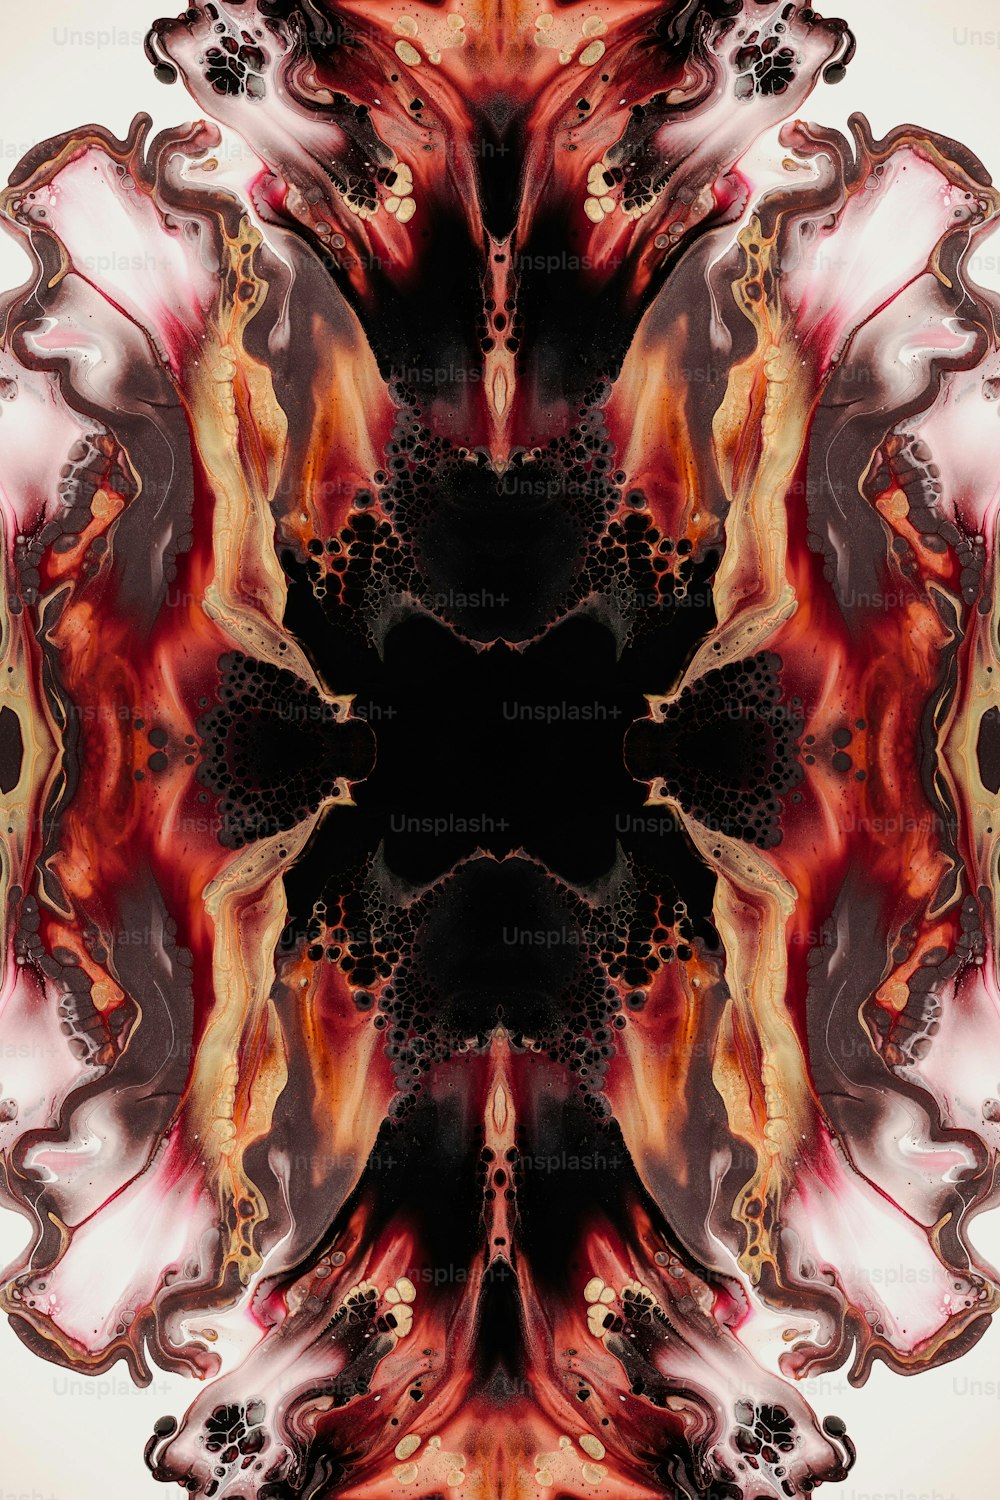 Una imagen abstracta de una flor roja y negra